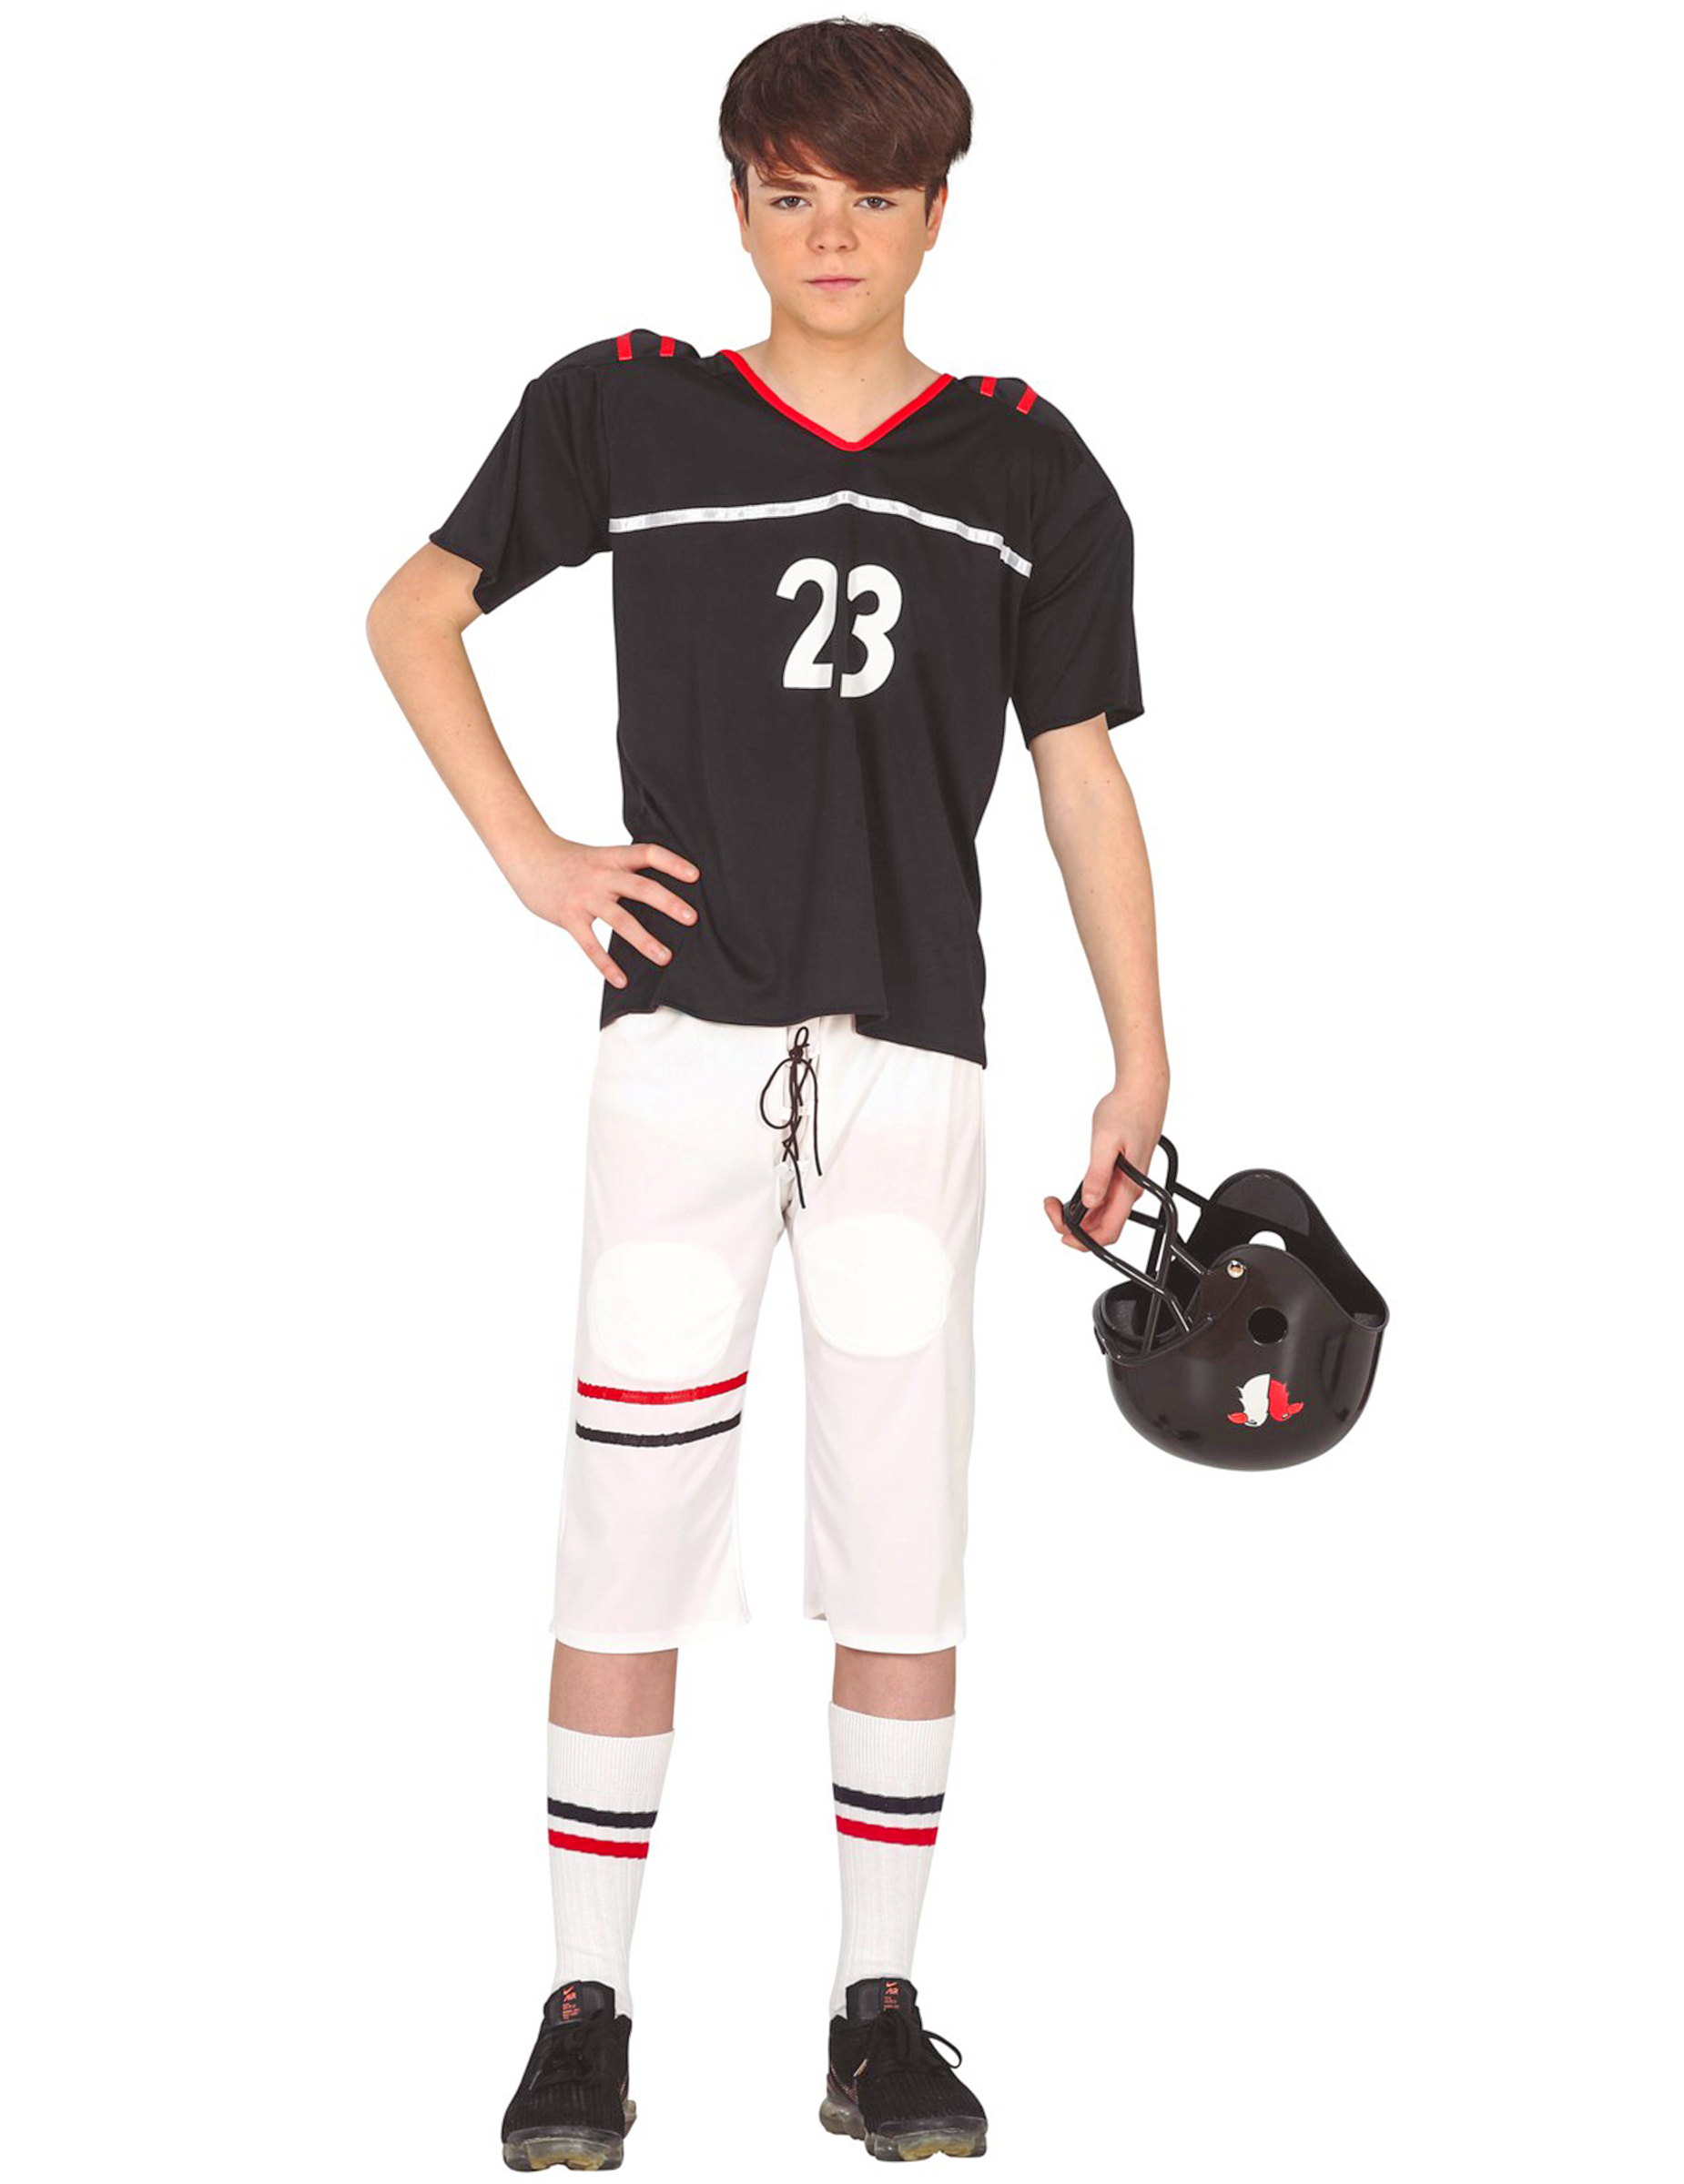 American Football-Kostüm für Teenager schwarz-weiß-rot von FIESTAS GUIRCA, S.L.